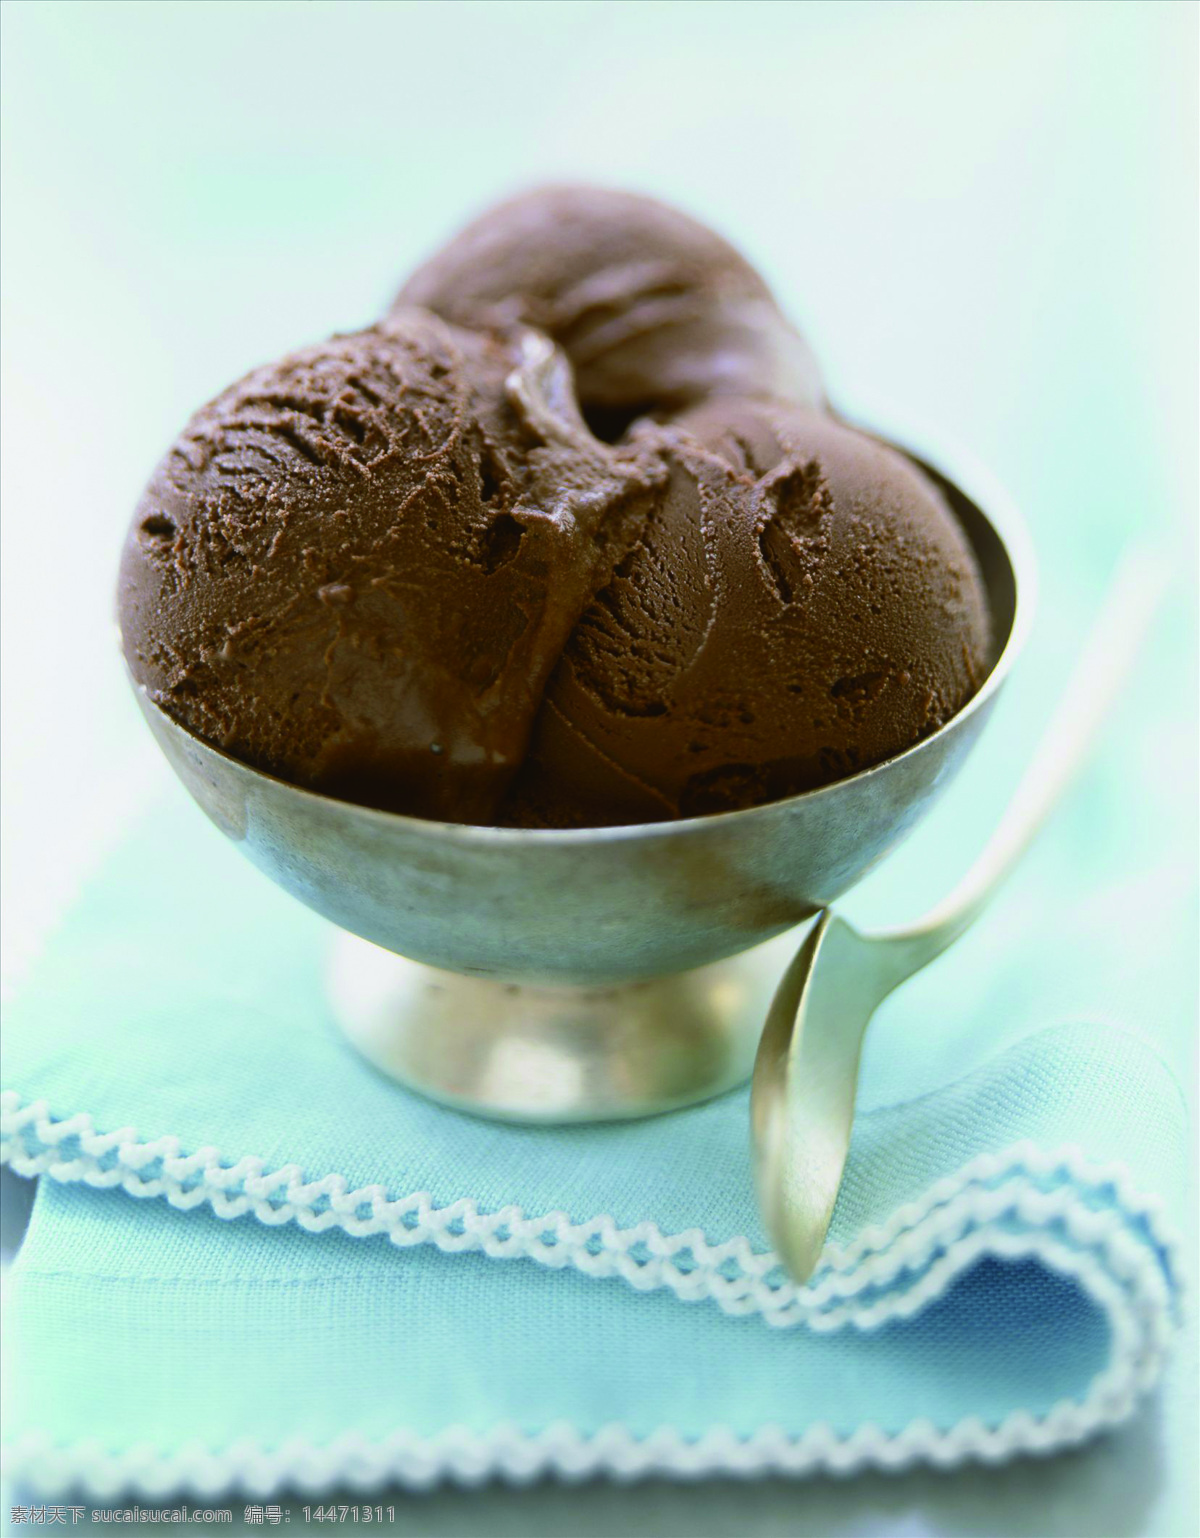 巧克力冰激凌 巧克力 冰激凌 巧克力球 冷饮 美食 餐饮美食 西餐美食